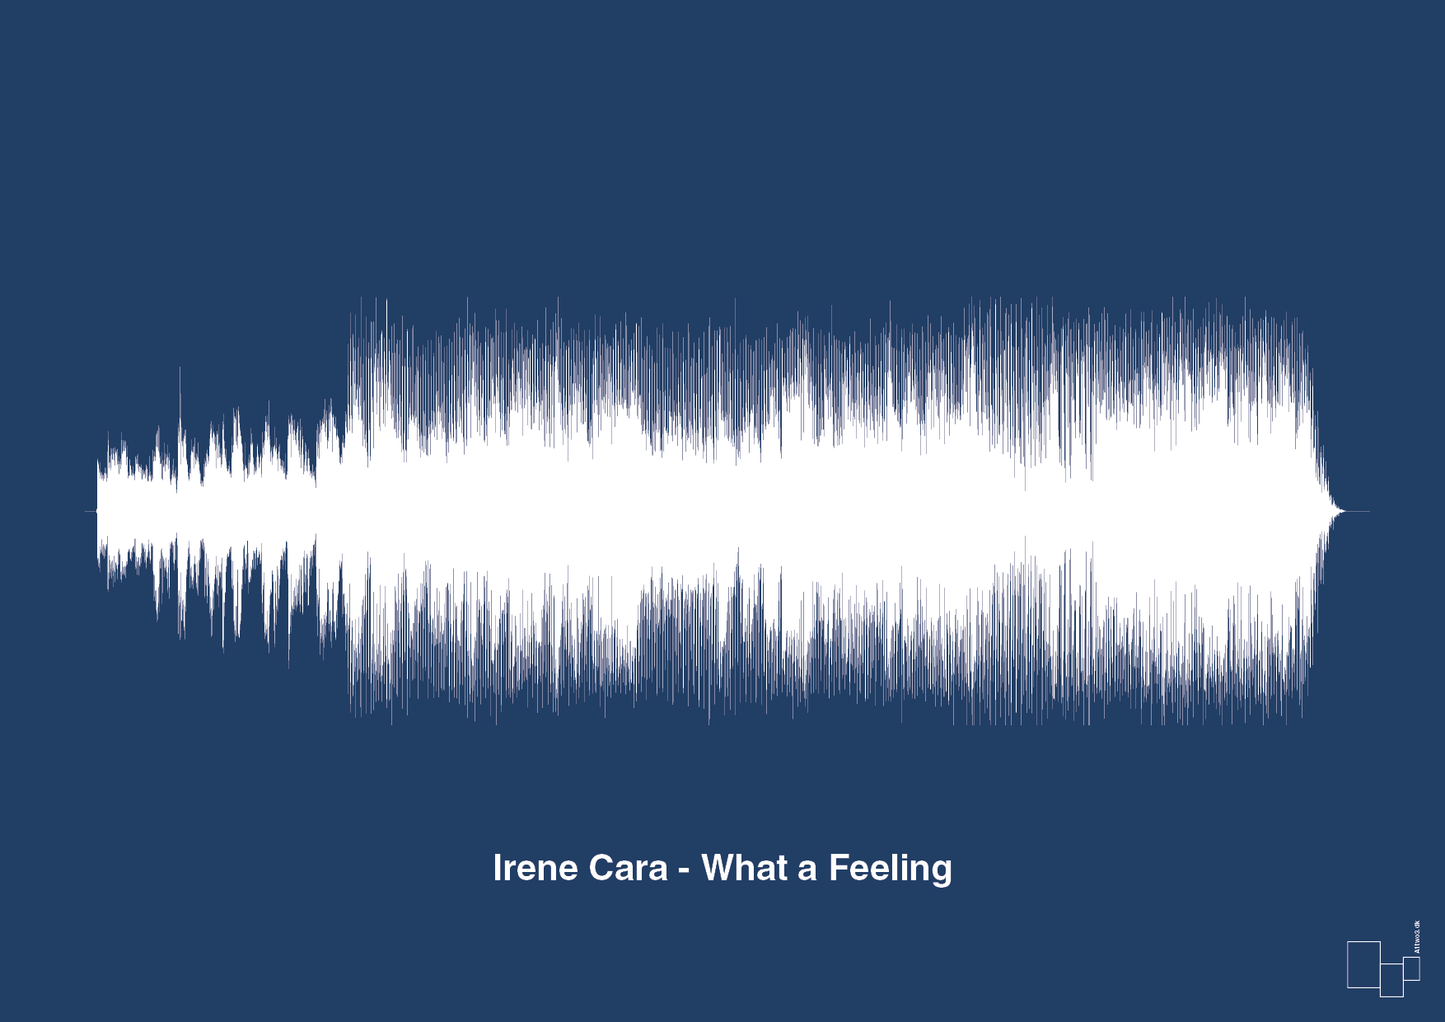 irene cara - what a feeling - Plakat med Musik i Lapis Blue